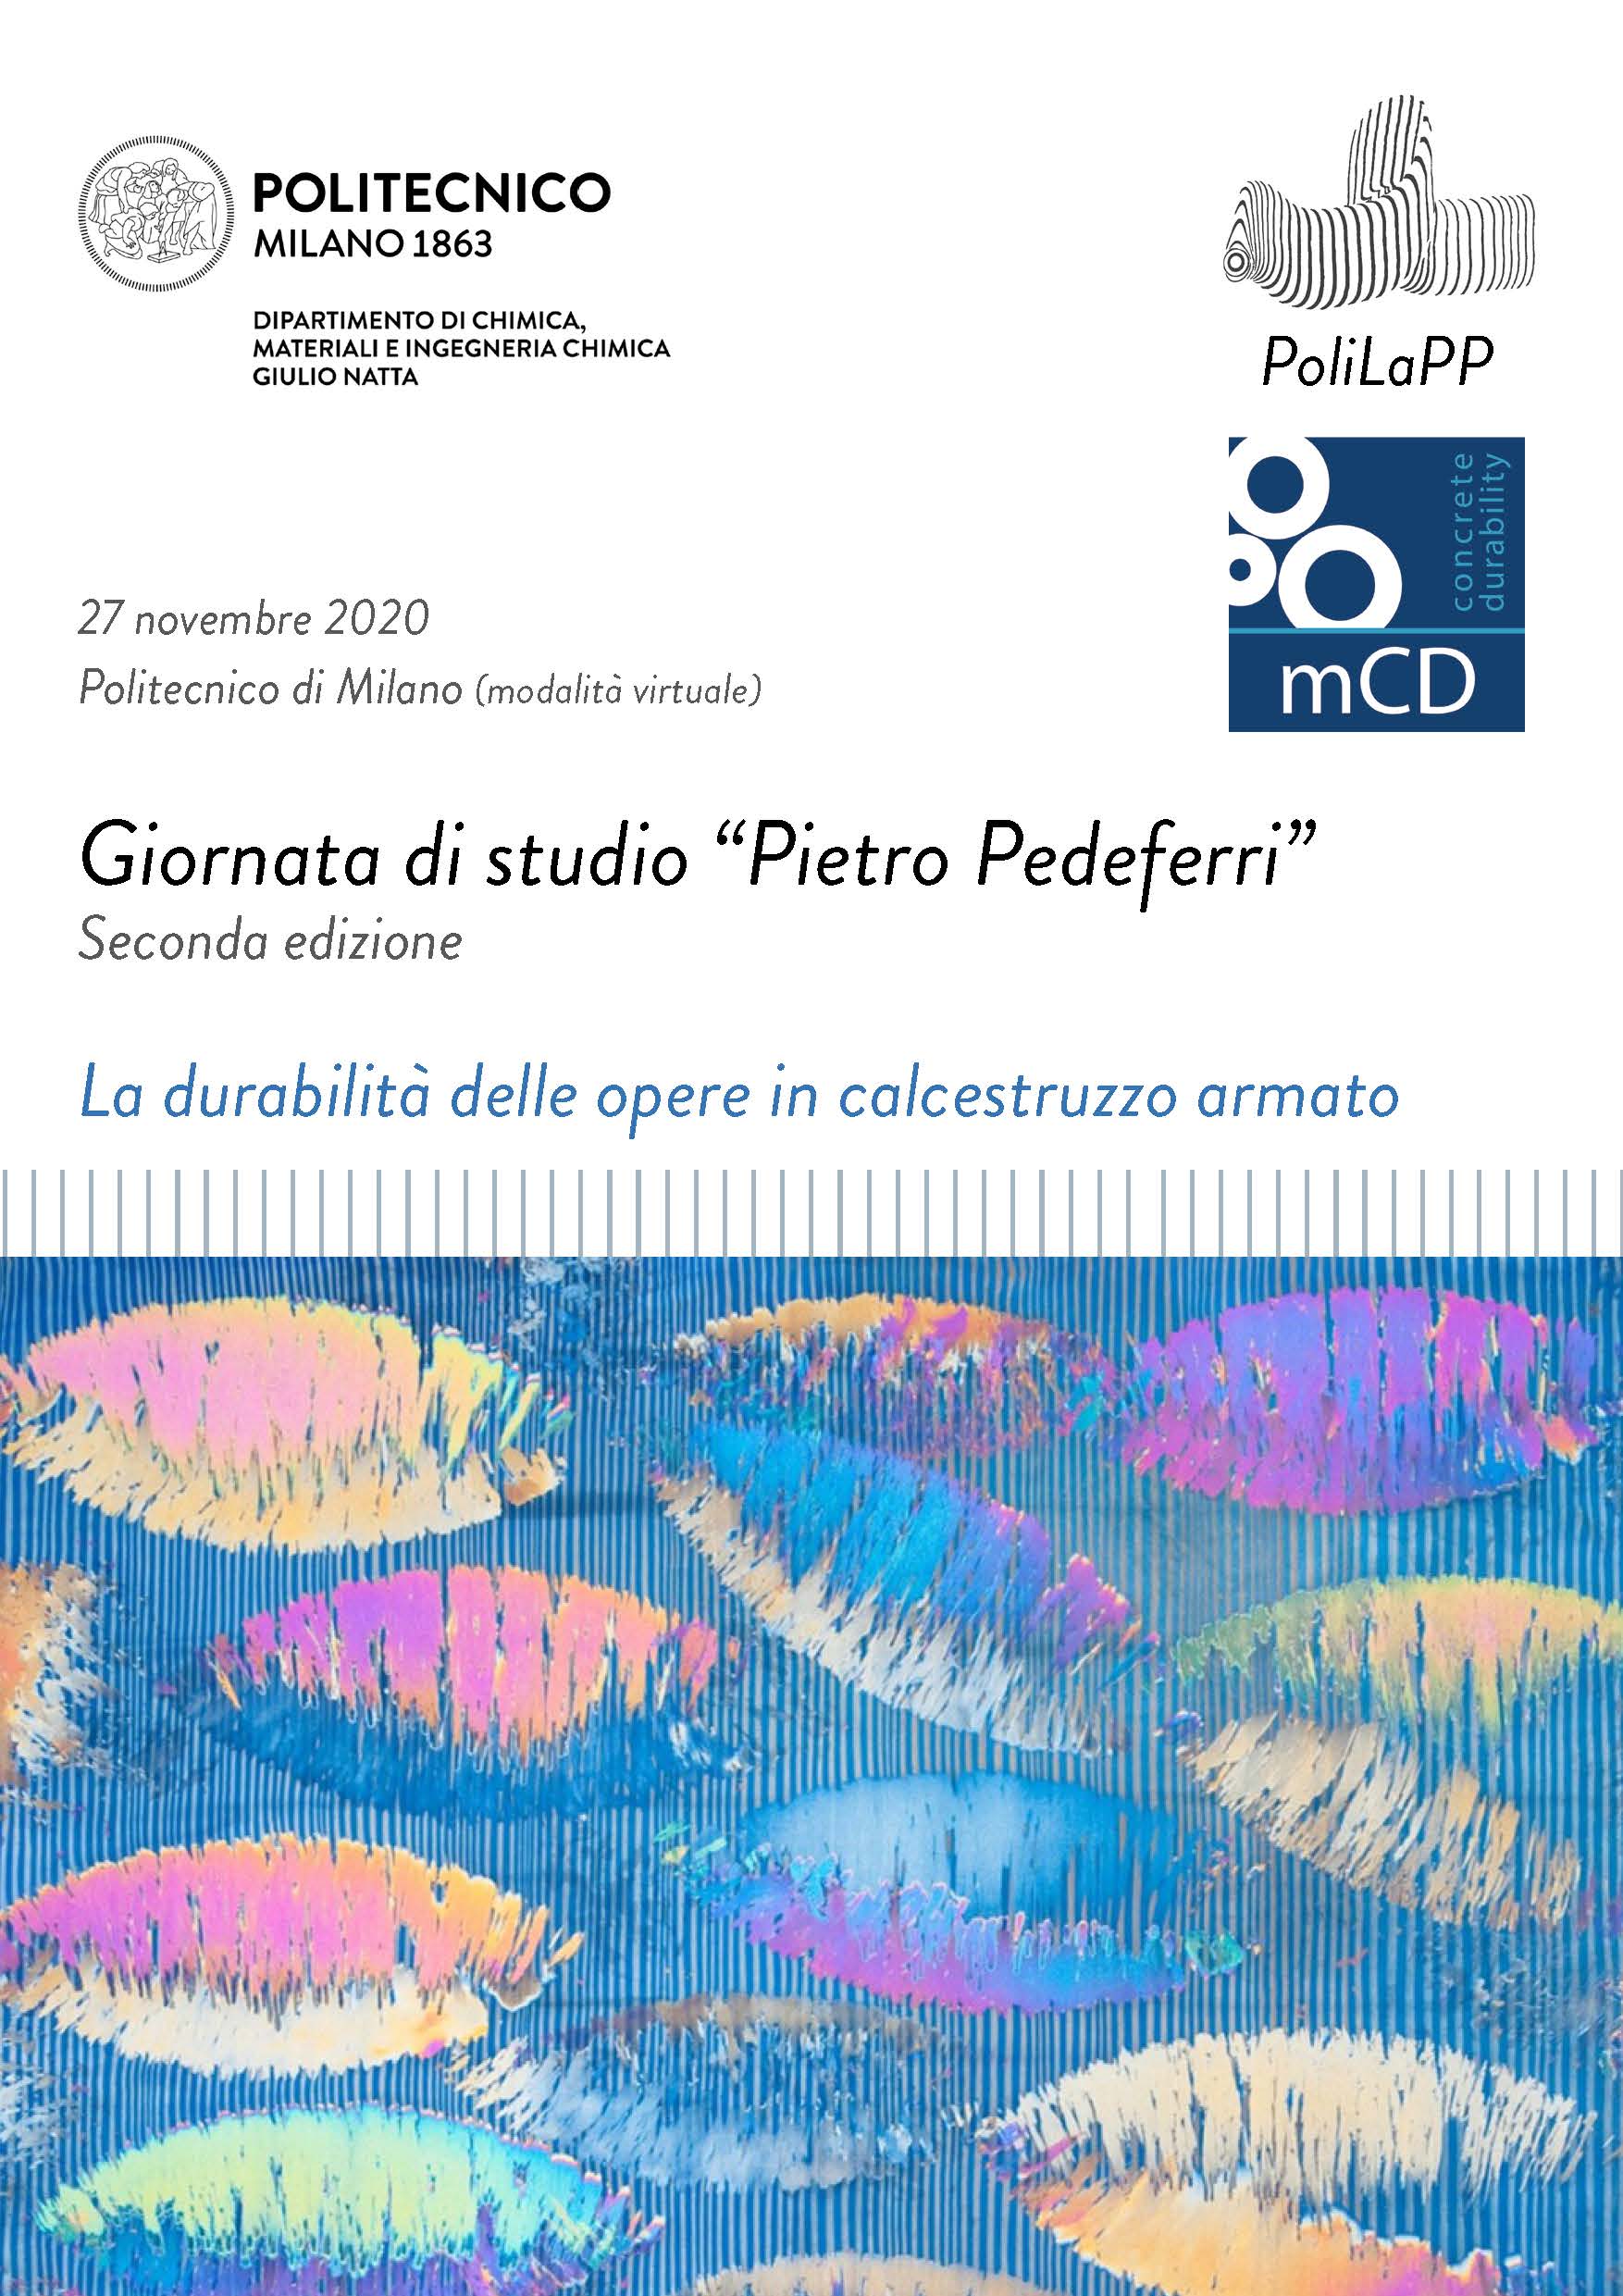 Giornata di studio "Pietro Pedeferri" - Seconda edizione